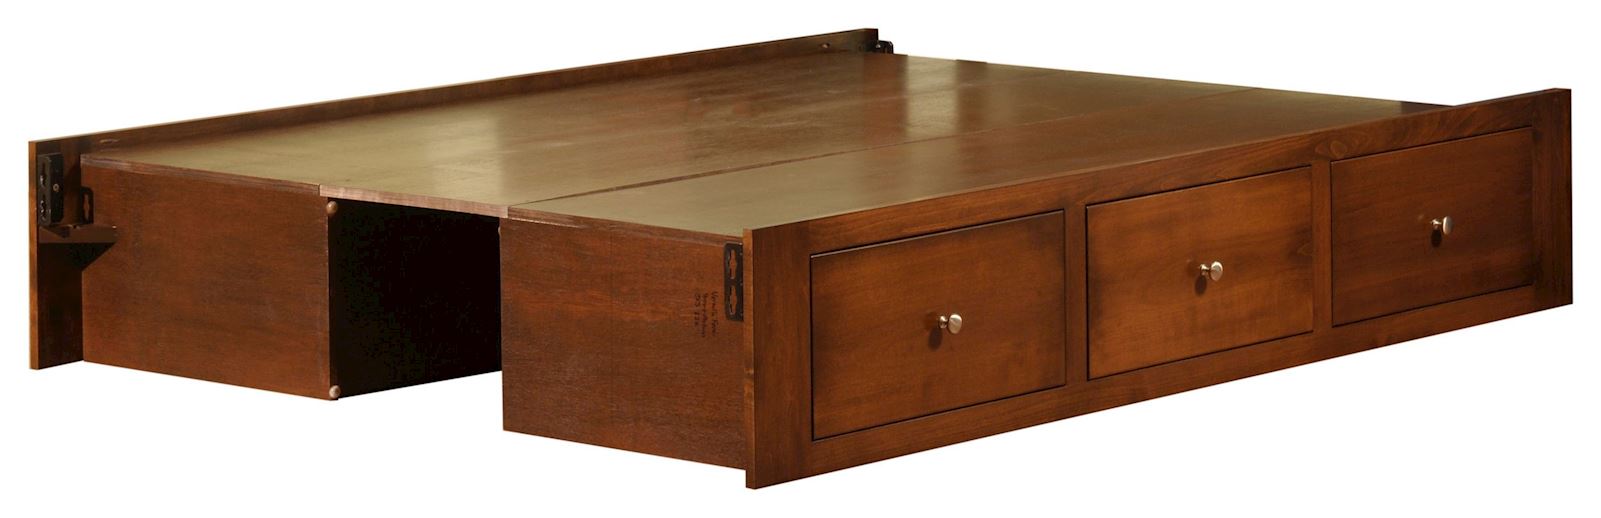 under-bed-storage-drawers